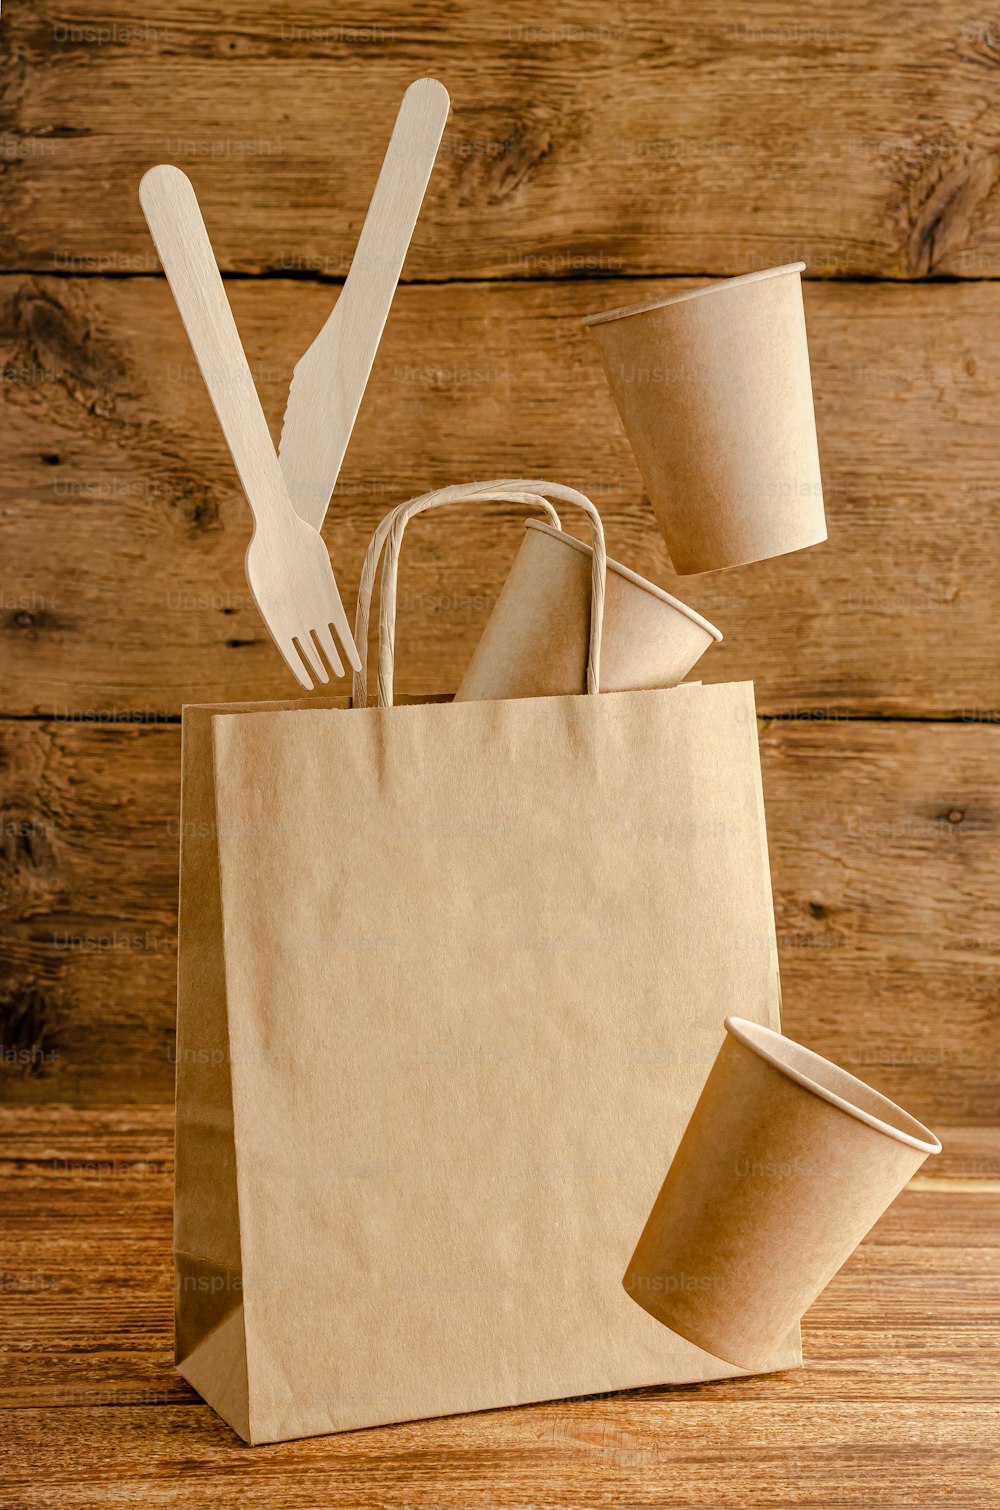 Vaisselle en papier jetable volant sur le sac avec maquette sur fond en bois. Concept de protection de l’environnement.